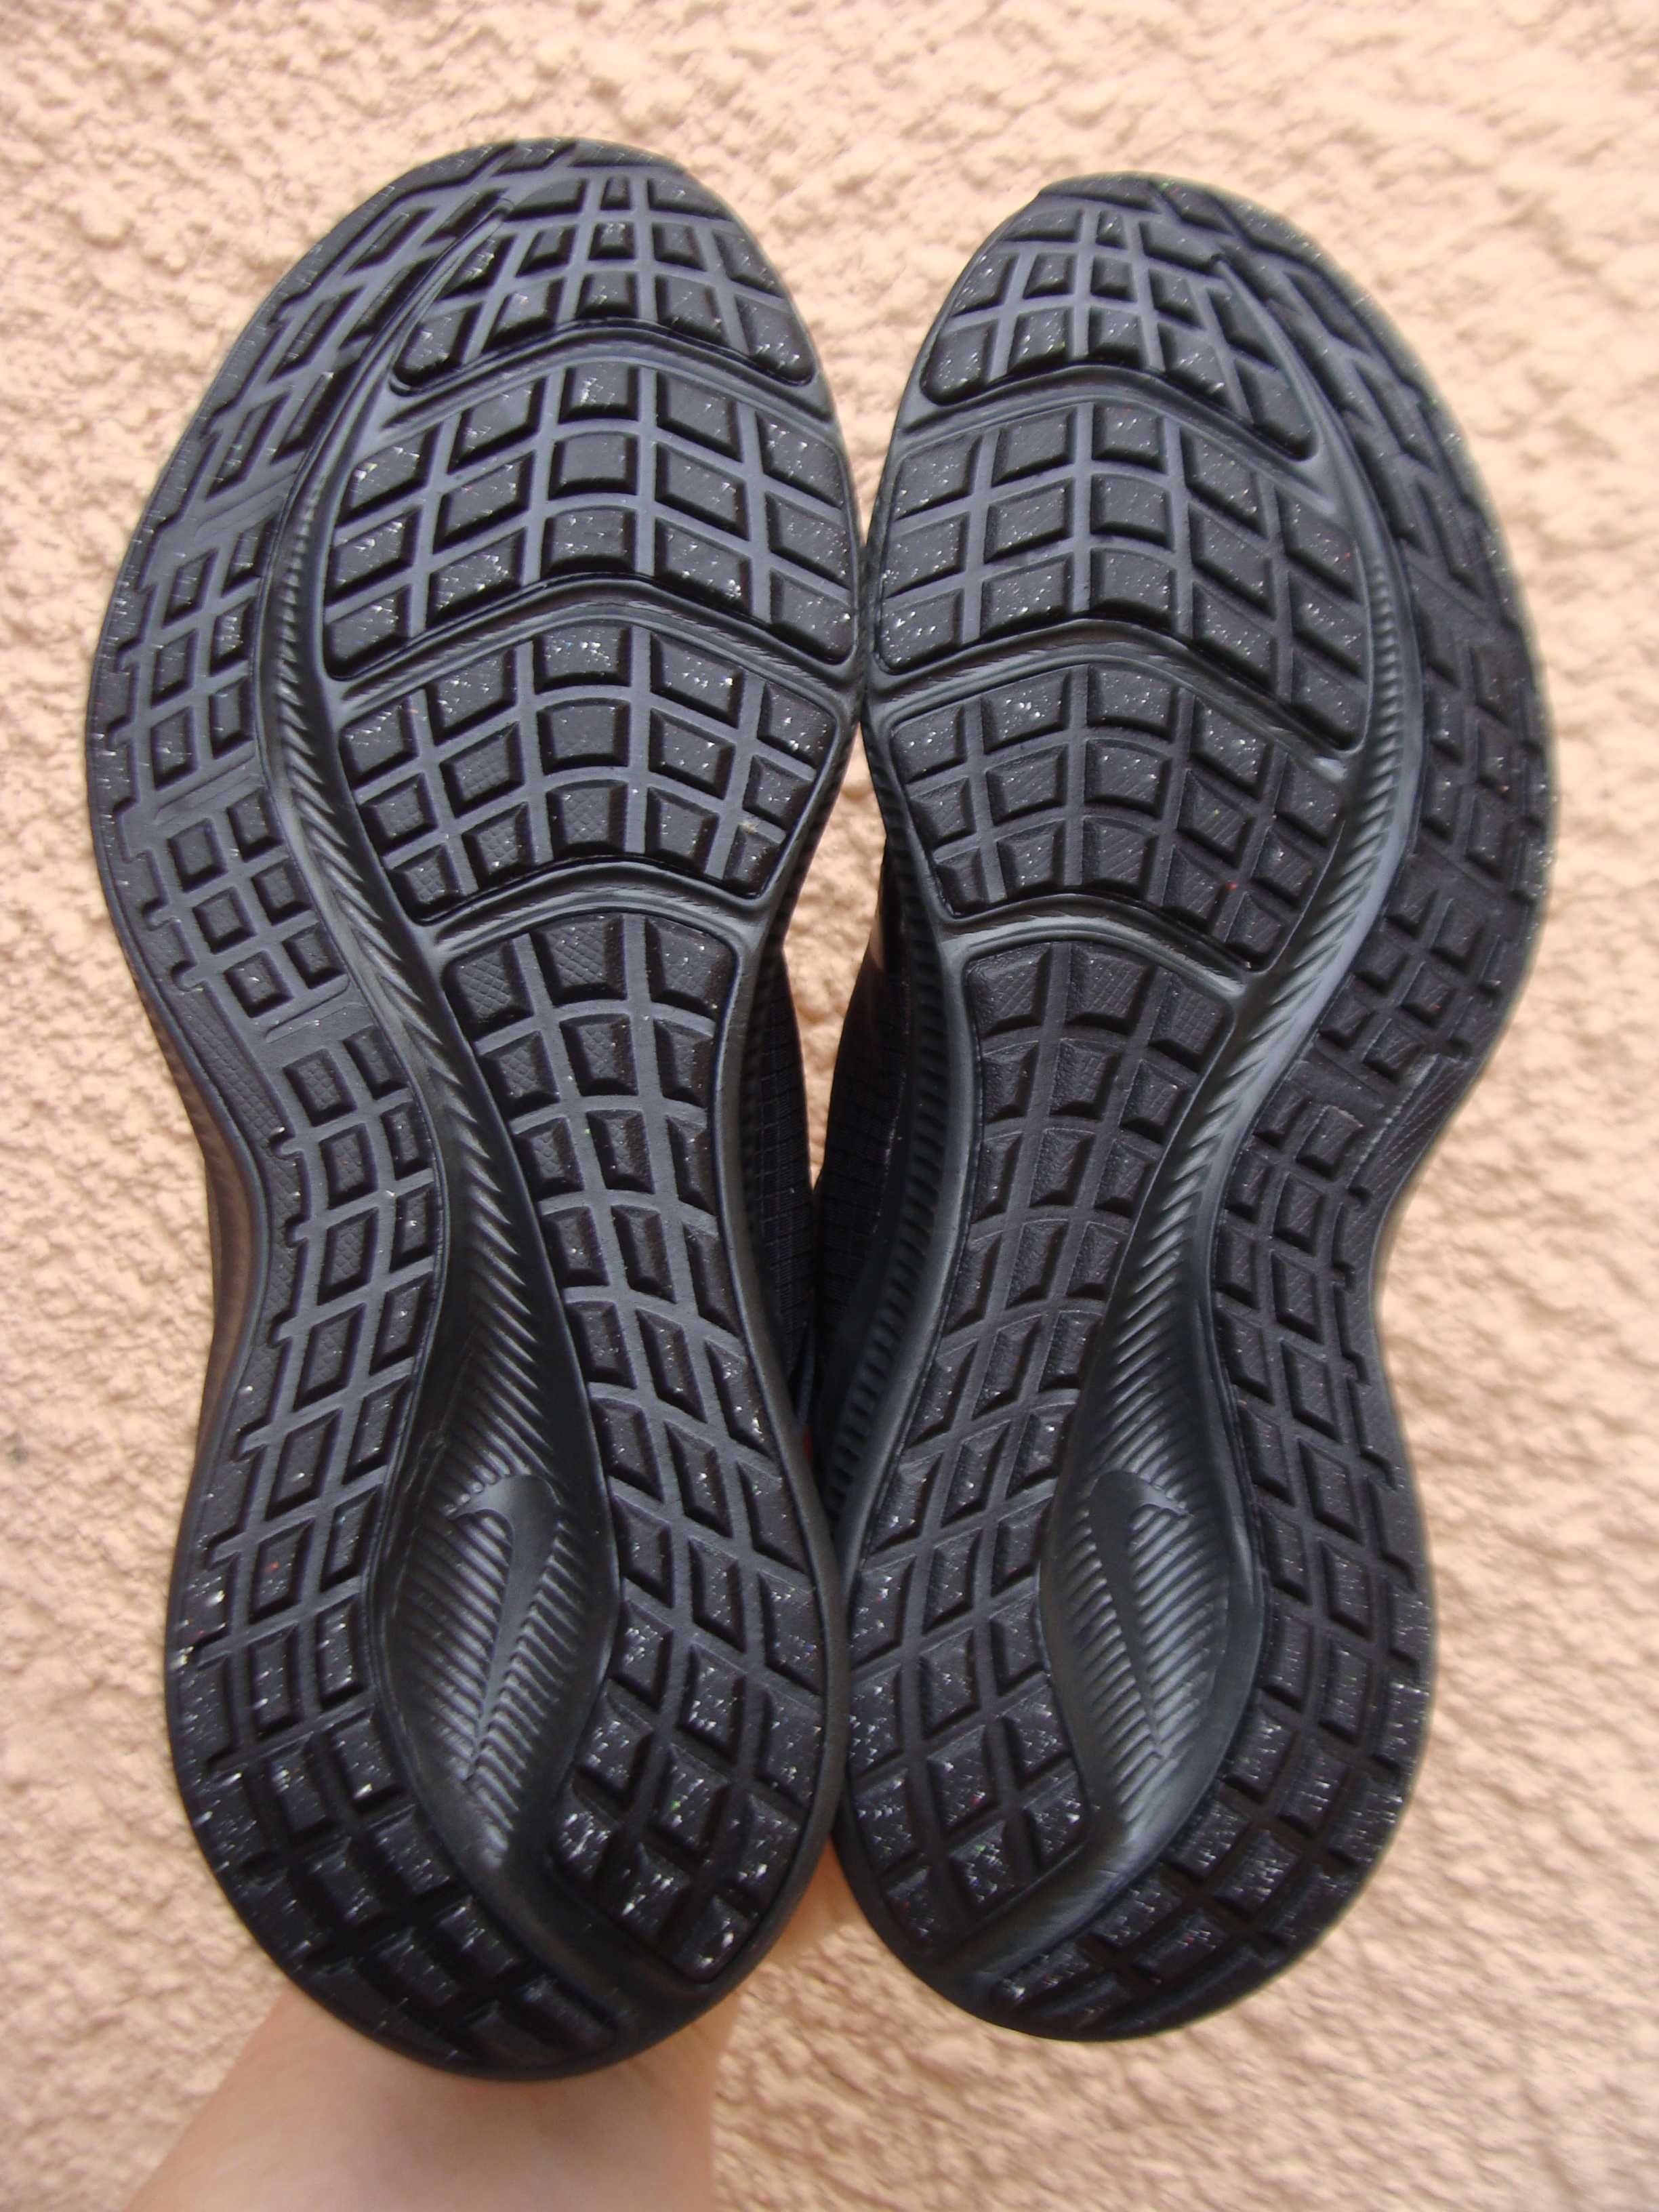 32/20 см Nike dowinshifter новые кроссовки на липучке оригинал 21 год